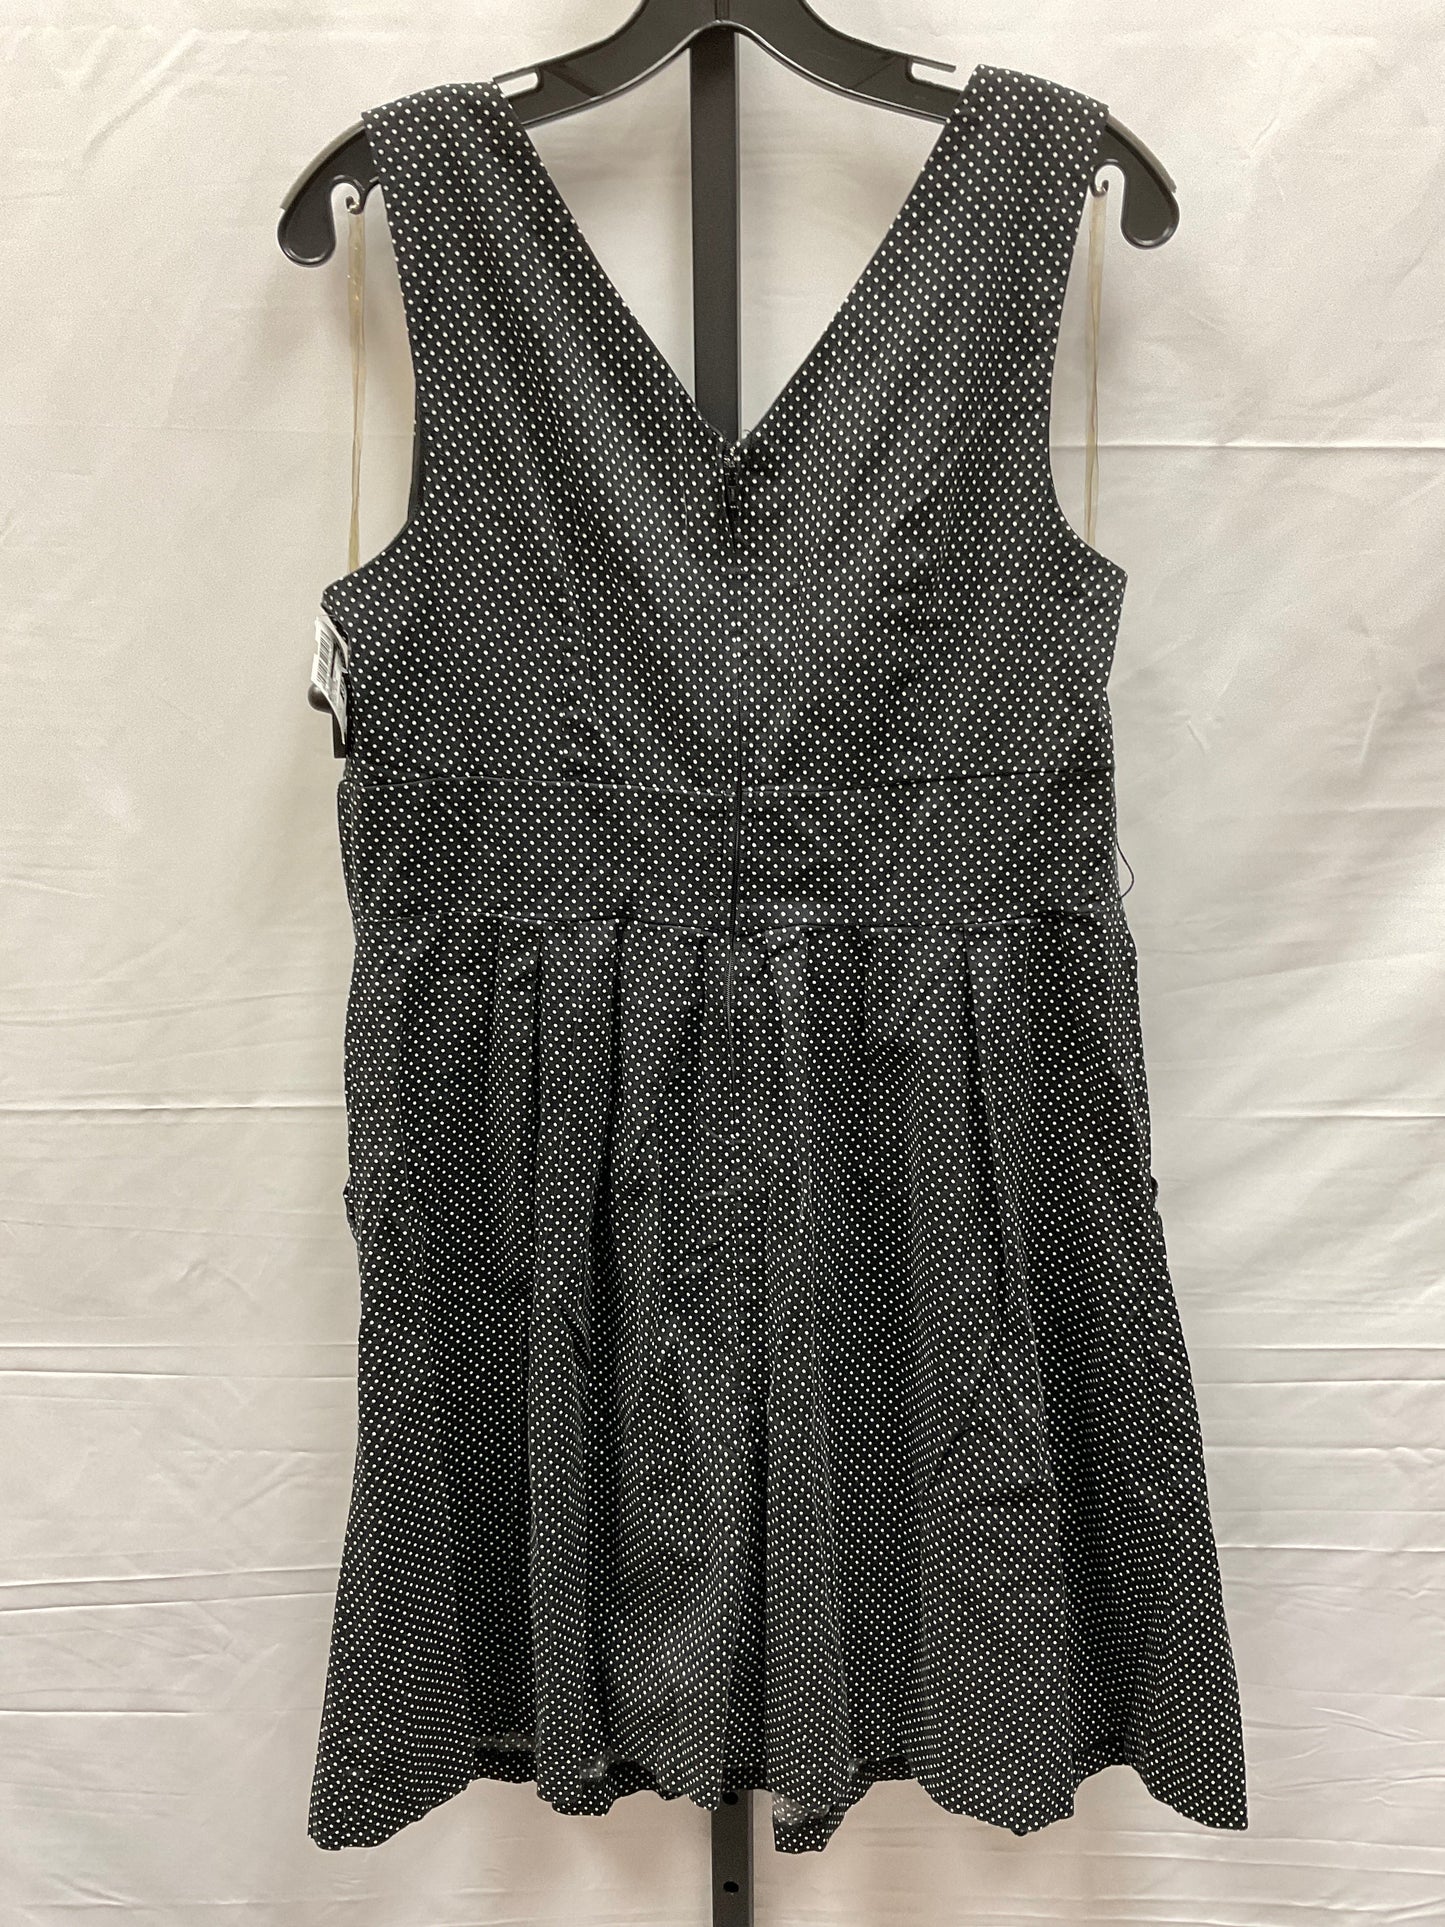 Polkadot Pattern Dress Casual Midi Dressbarn, Size 14